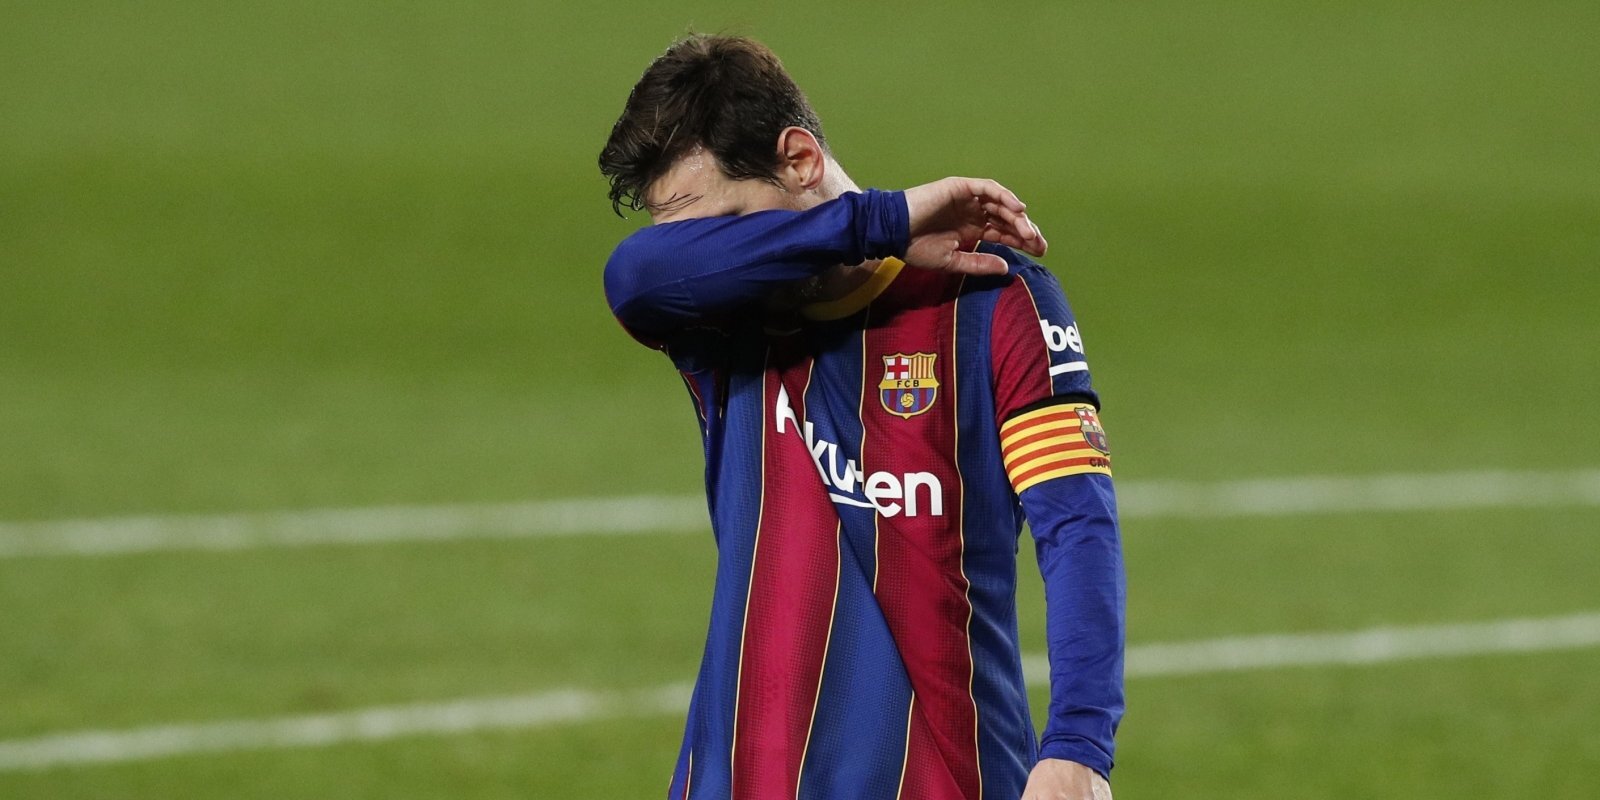 Miljonāru asaras Barselonā. Kā izira pasaules labākā futbola komanda